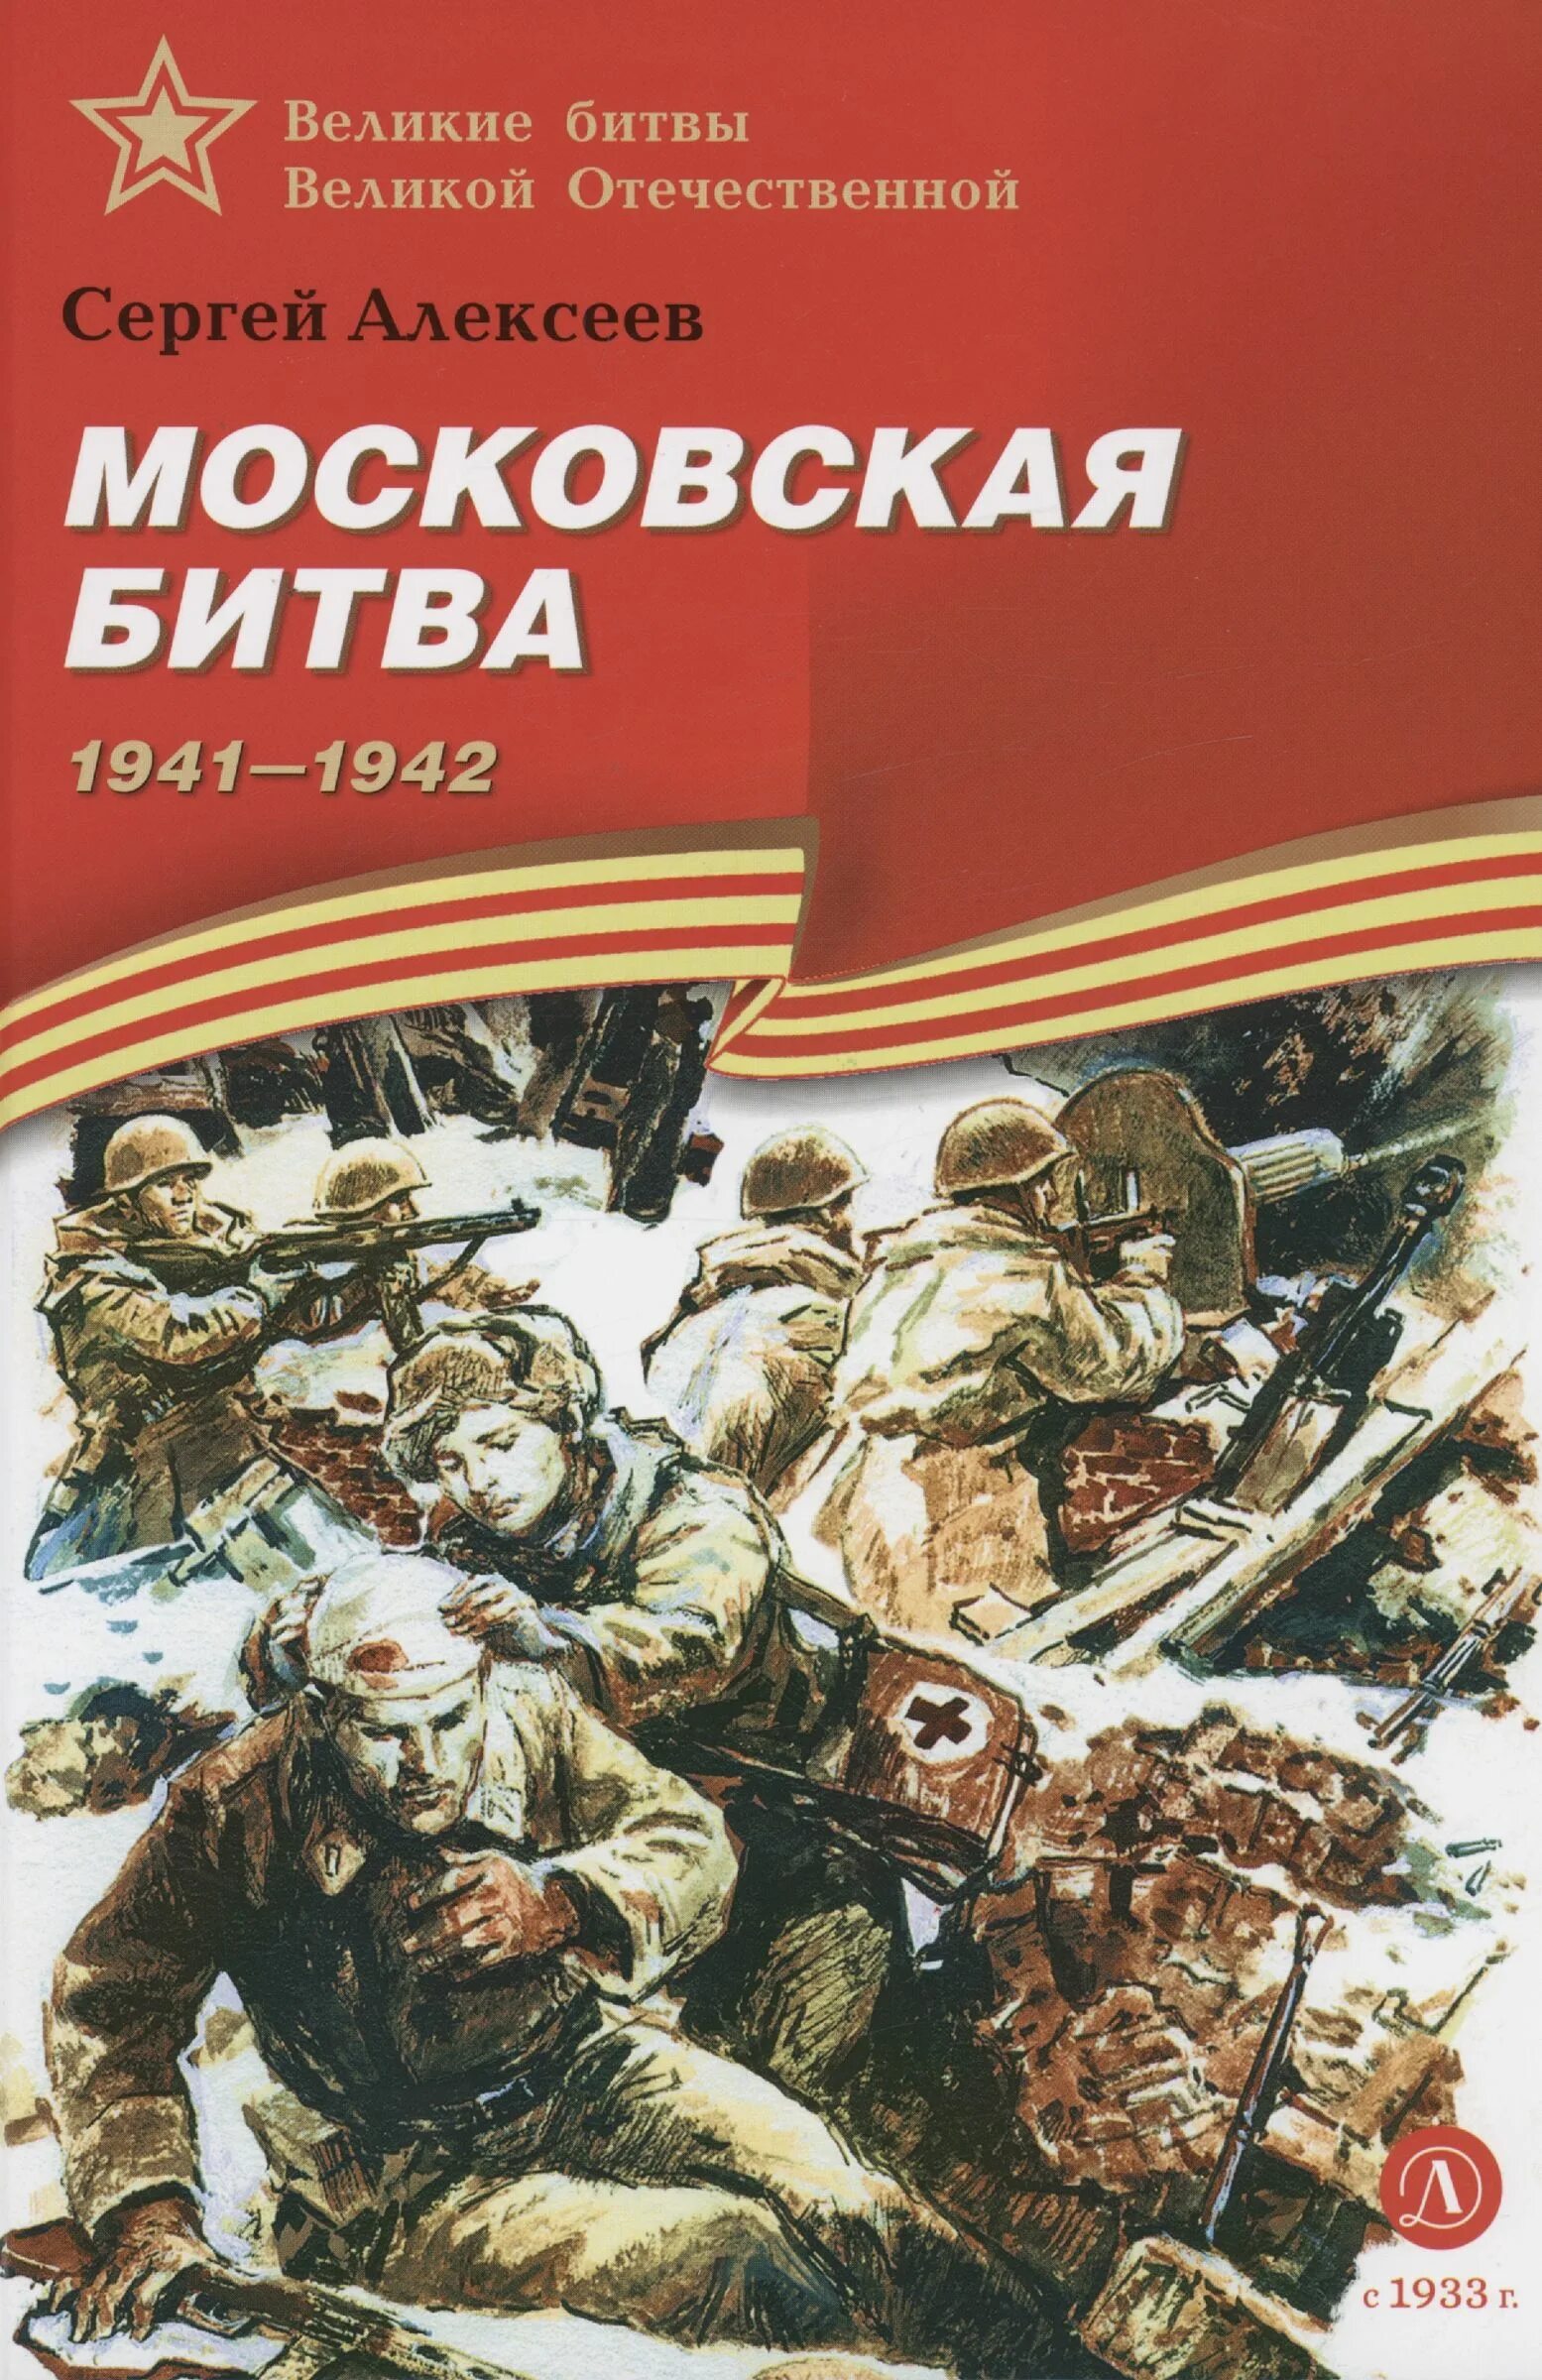 Книга с.Алексеева Московская битва.